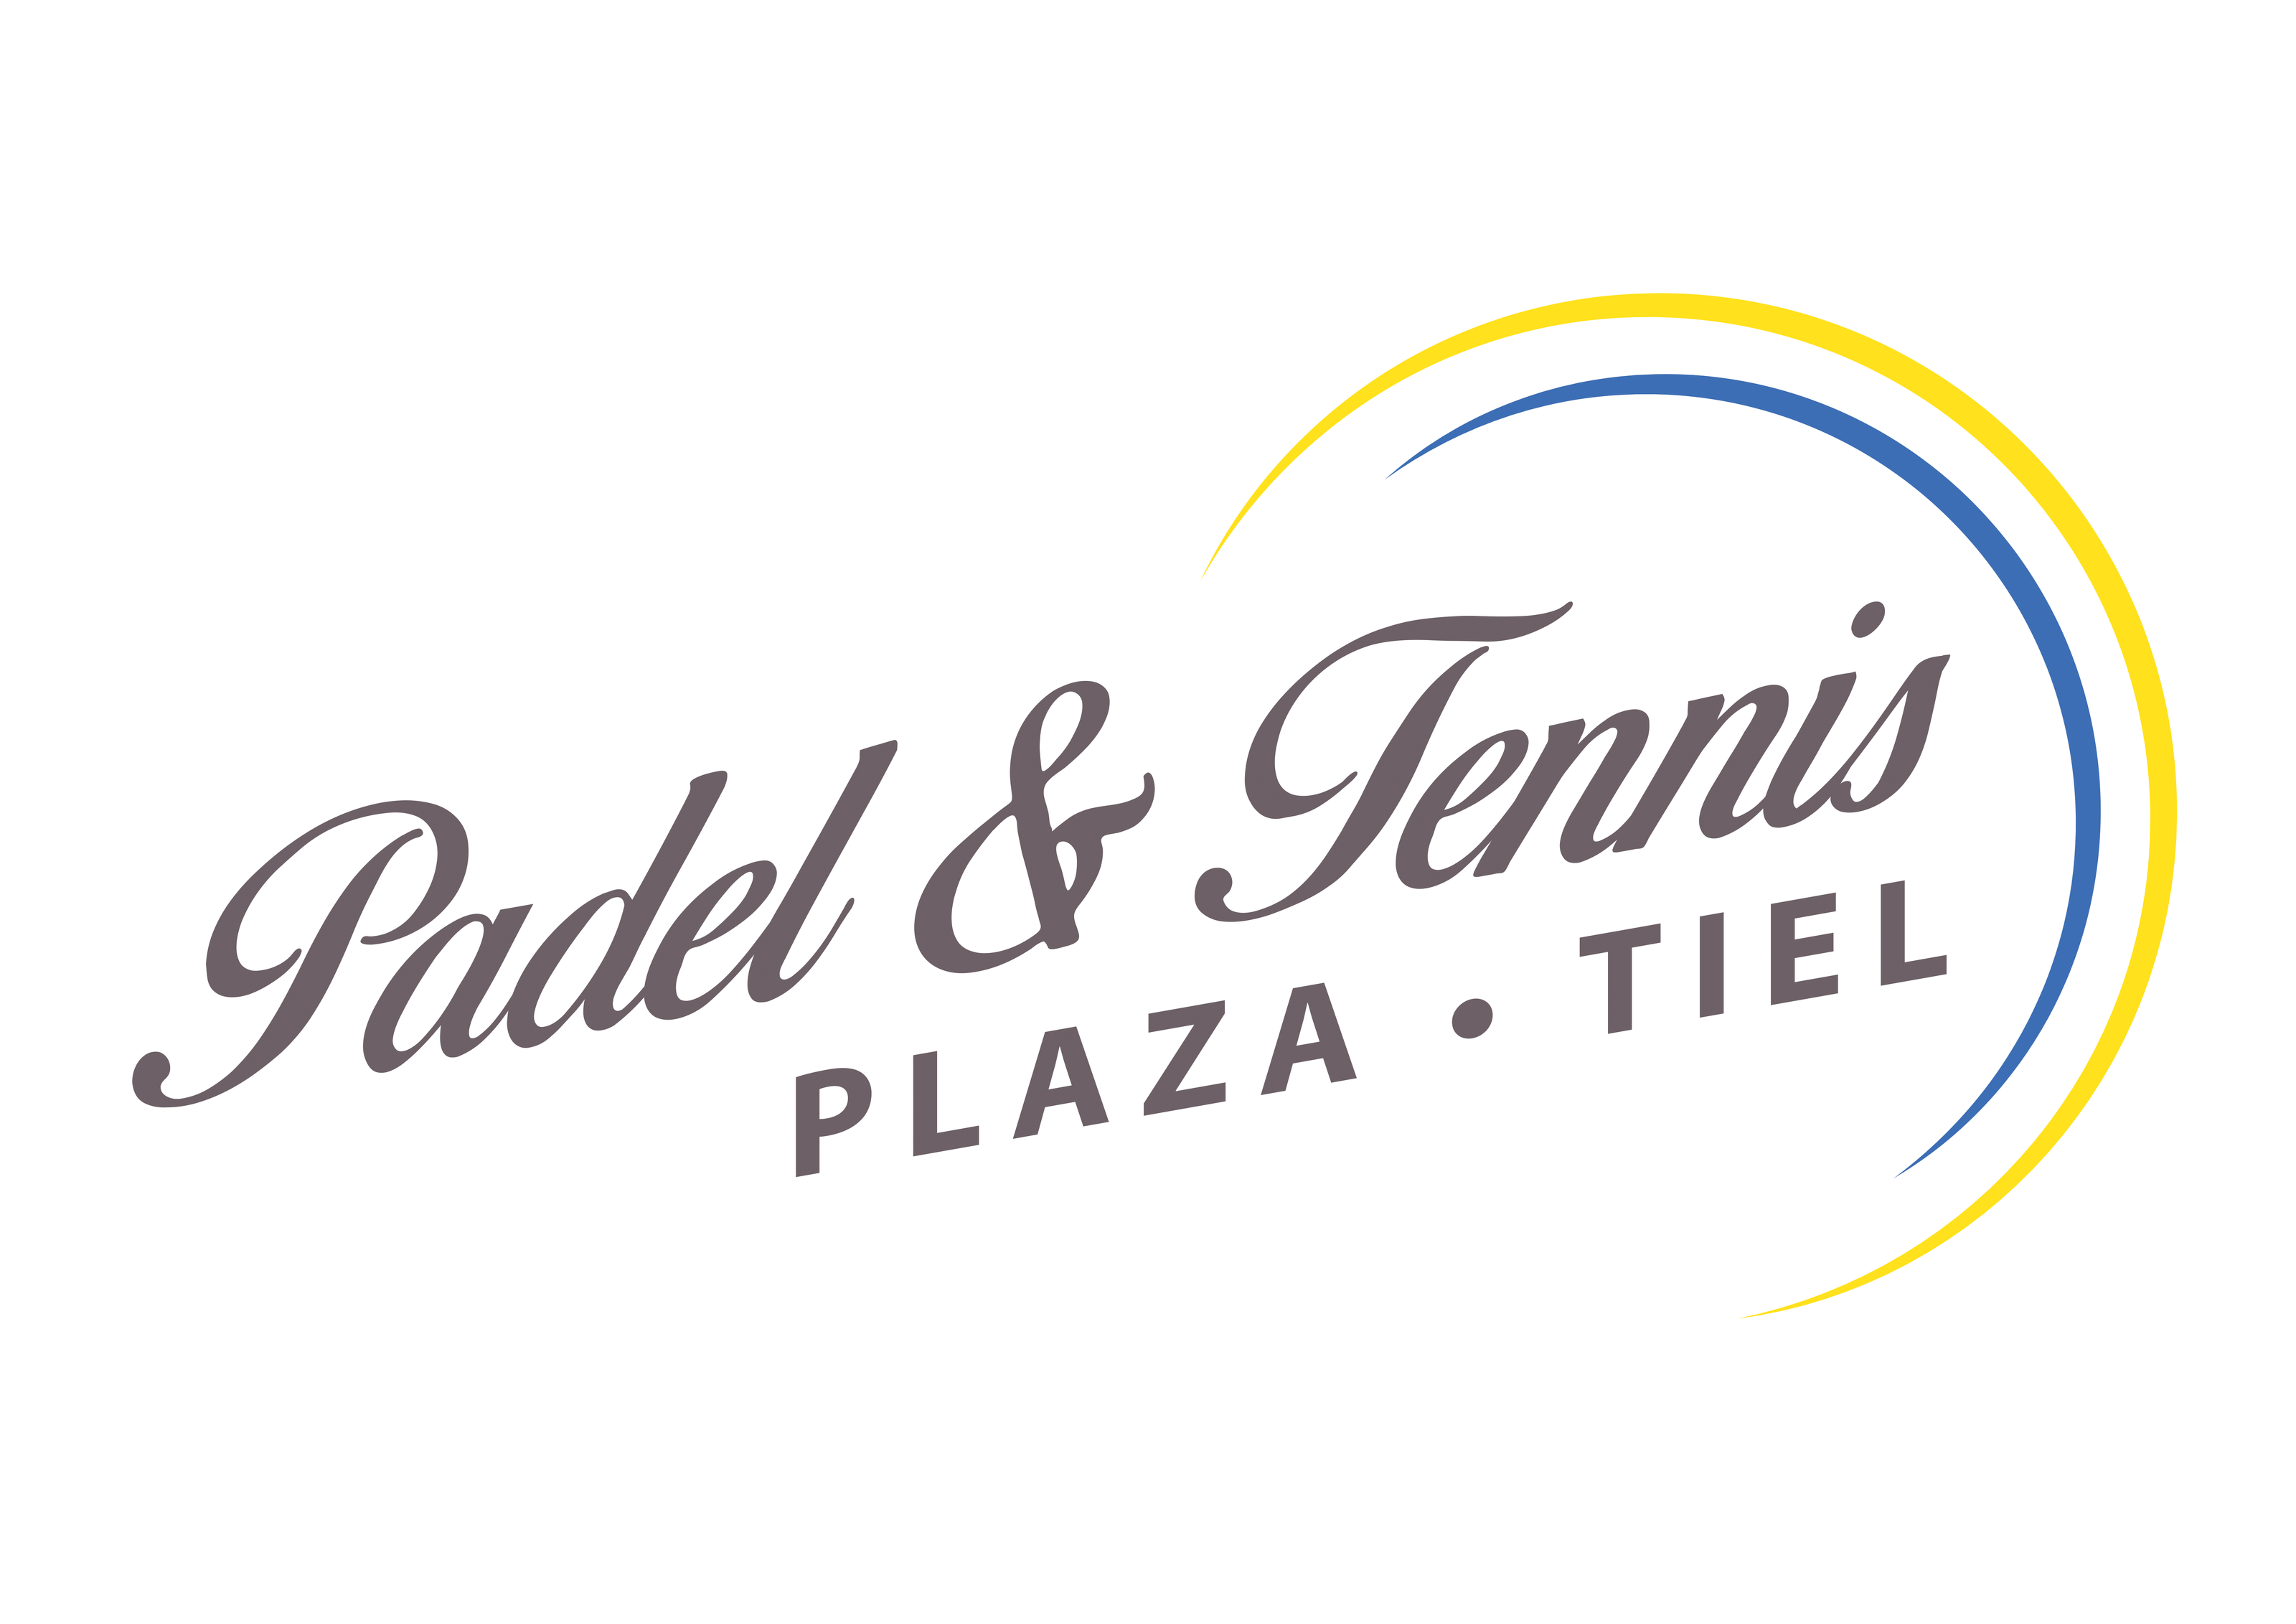 Profile image of venue Padel & Tennis Plaza Tiel